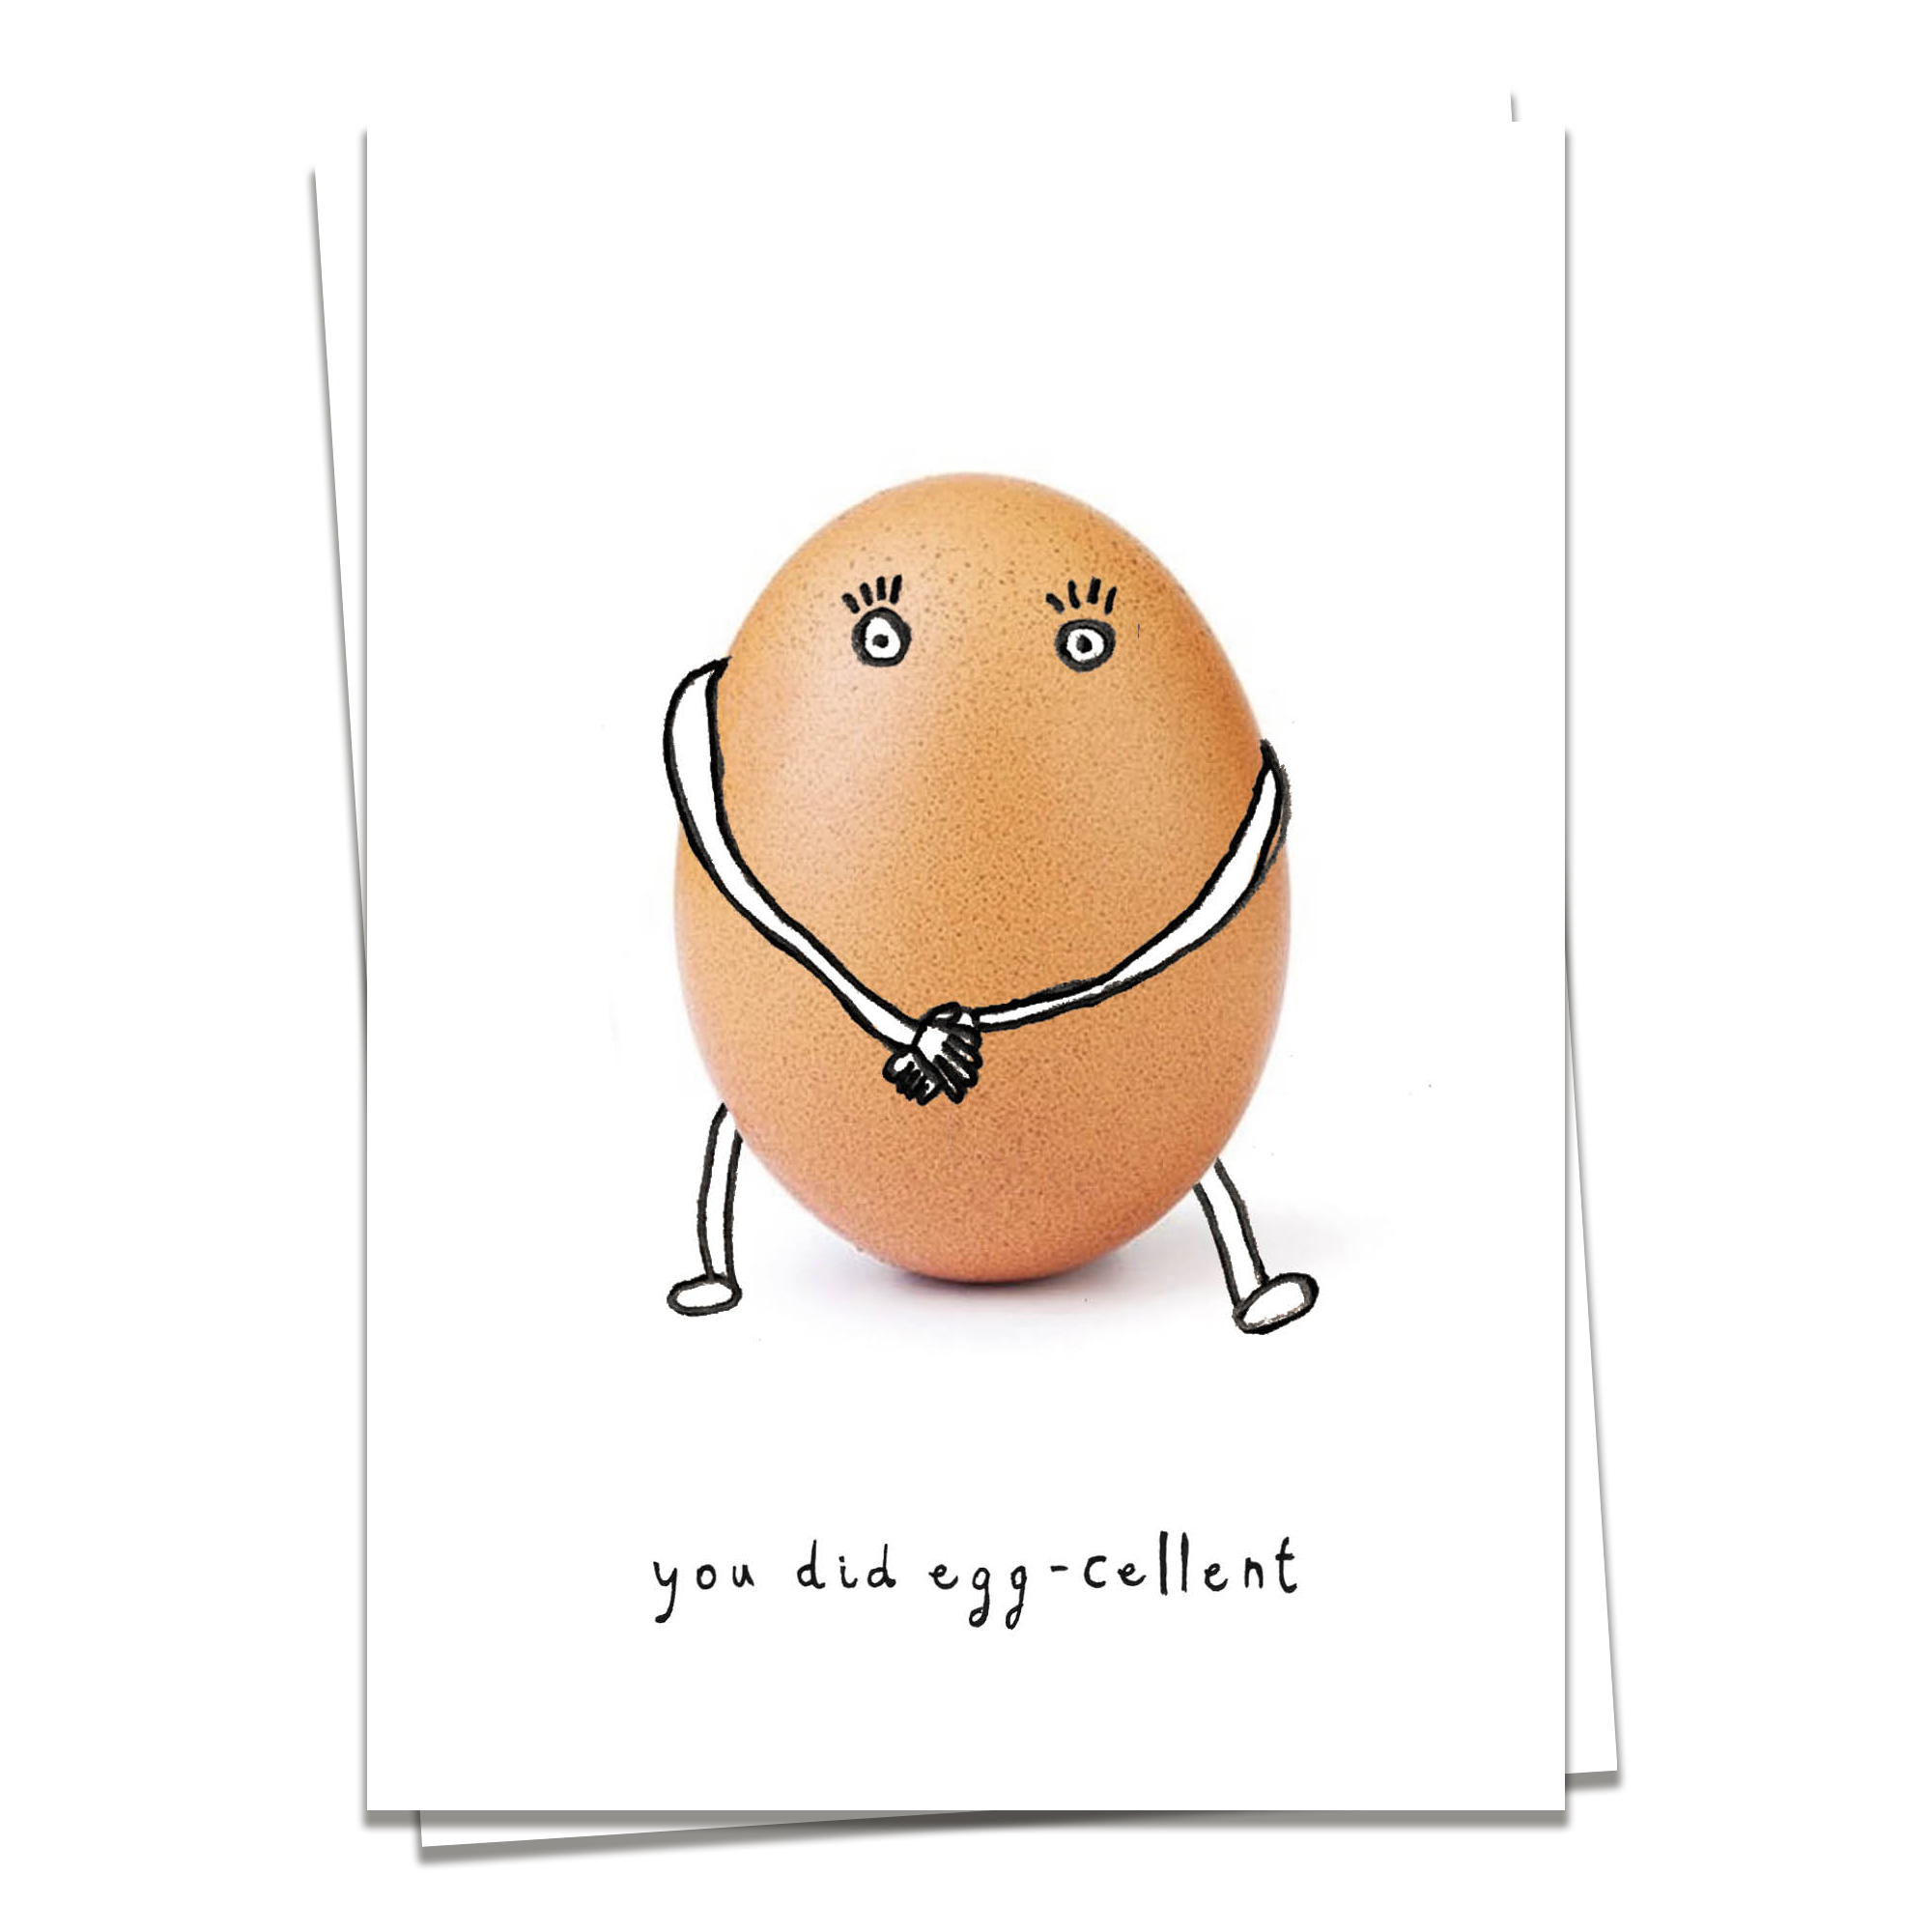 Support – Egg-cellent